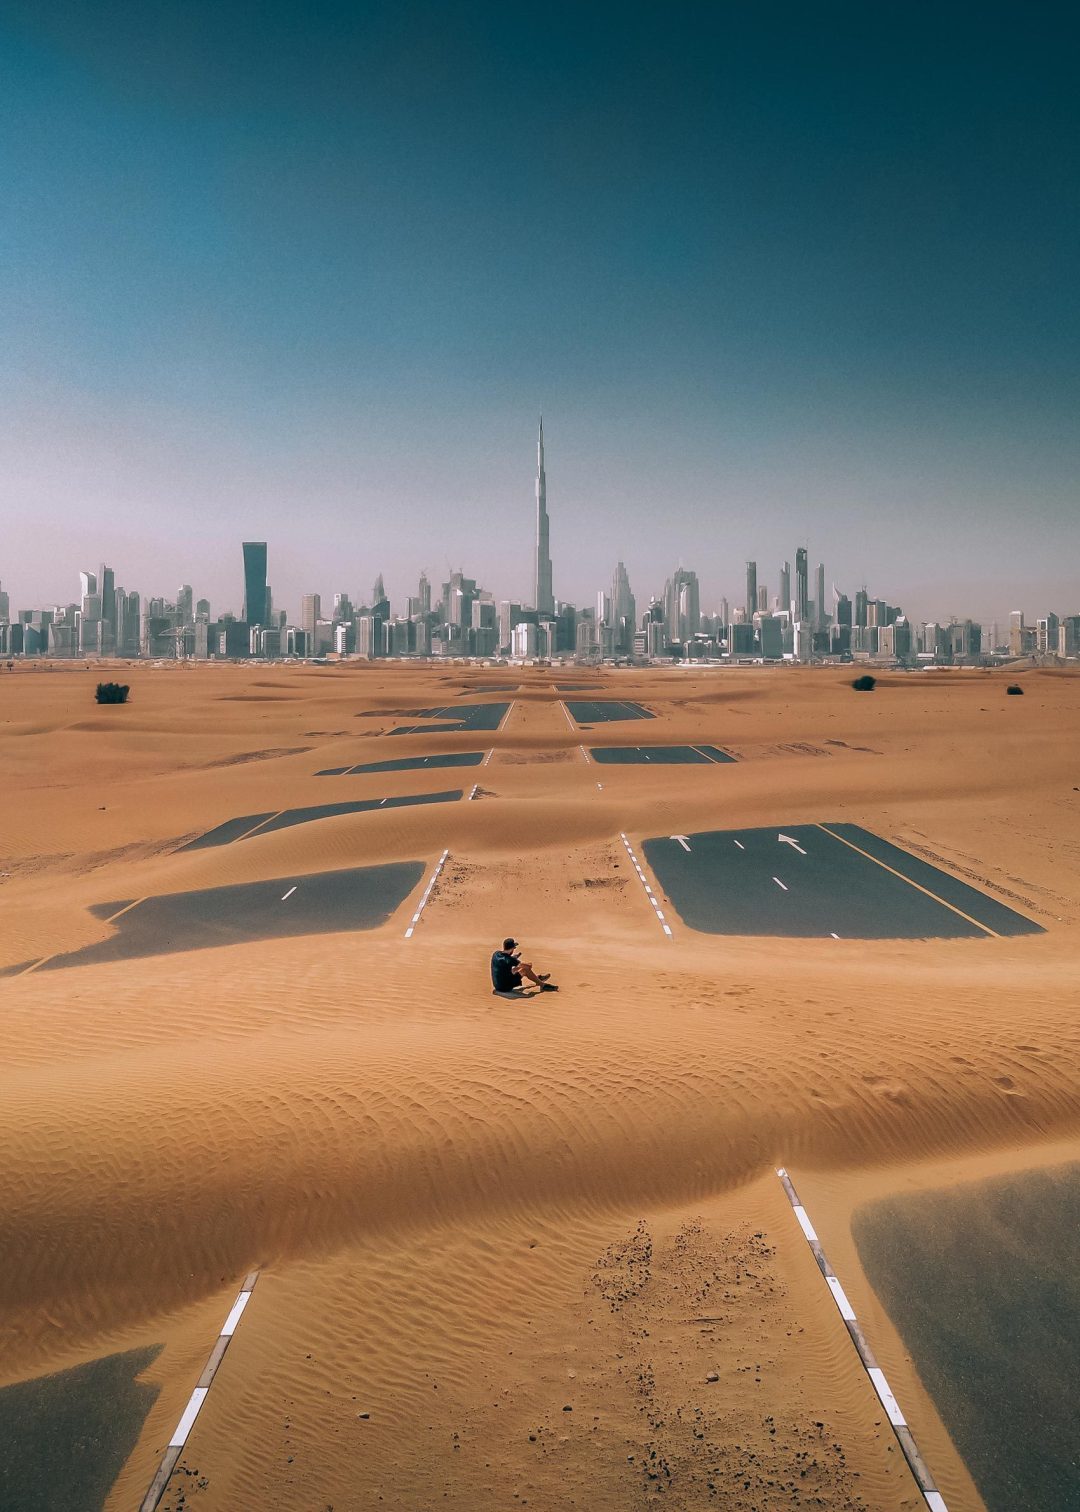 Surreal Dubai